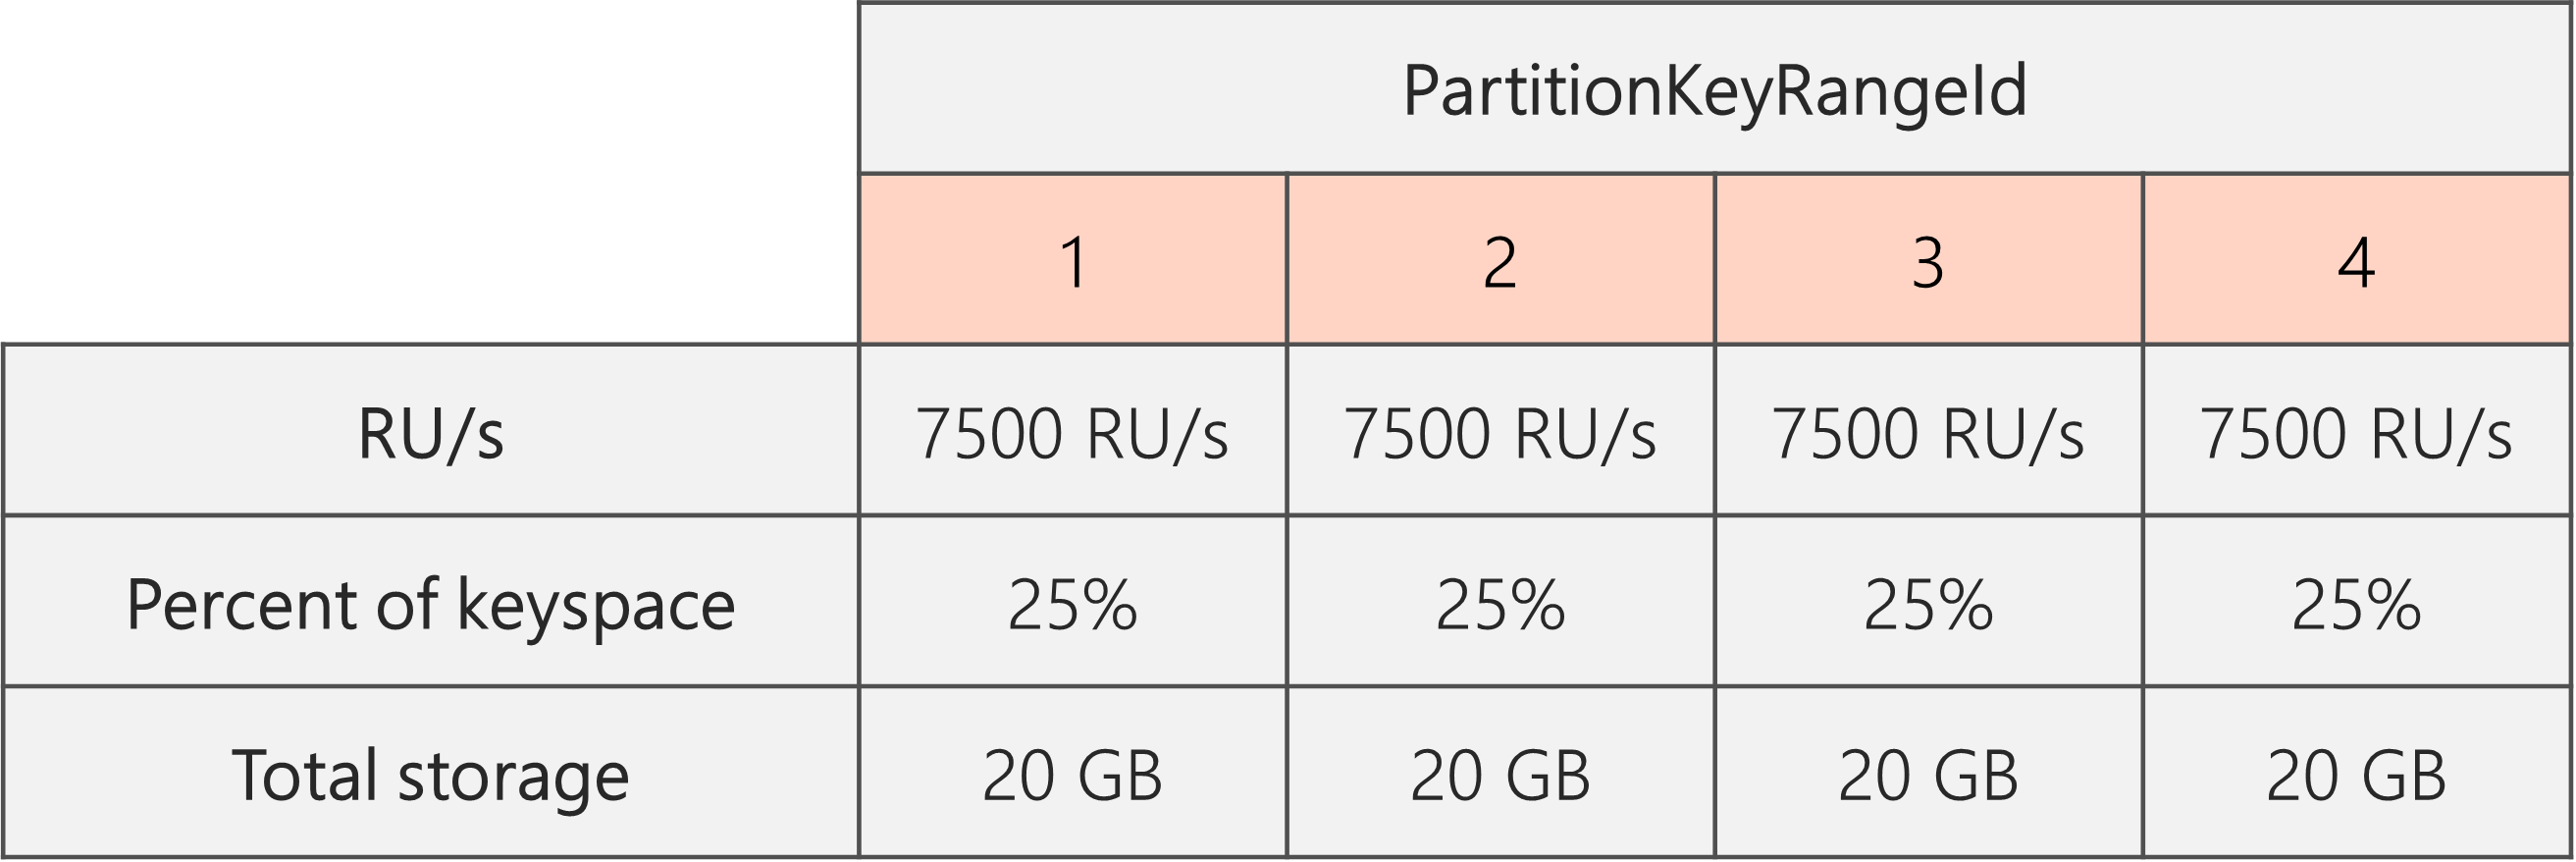 Depois que a divisão for concluída e o RU/s tiver sido reduzido de 40.000 RU/s para 30.000 RU/s, há 4 PartitionKeyRangeIds, cada um com 7500 RU/s e 25% do espaço total de chaves (20 GB)